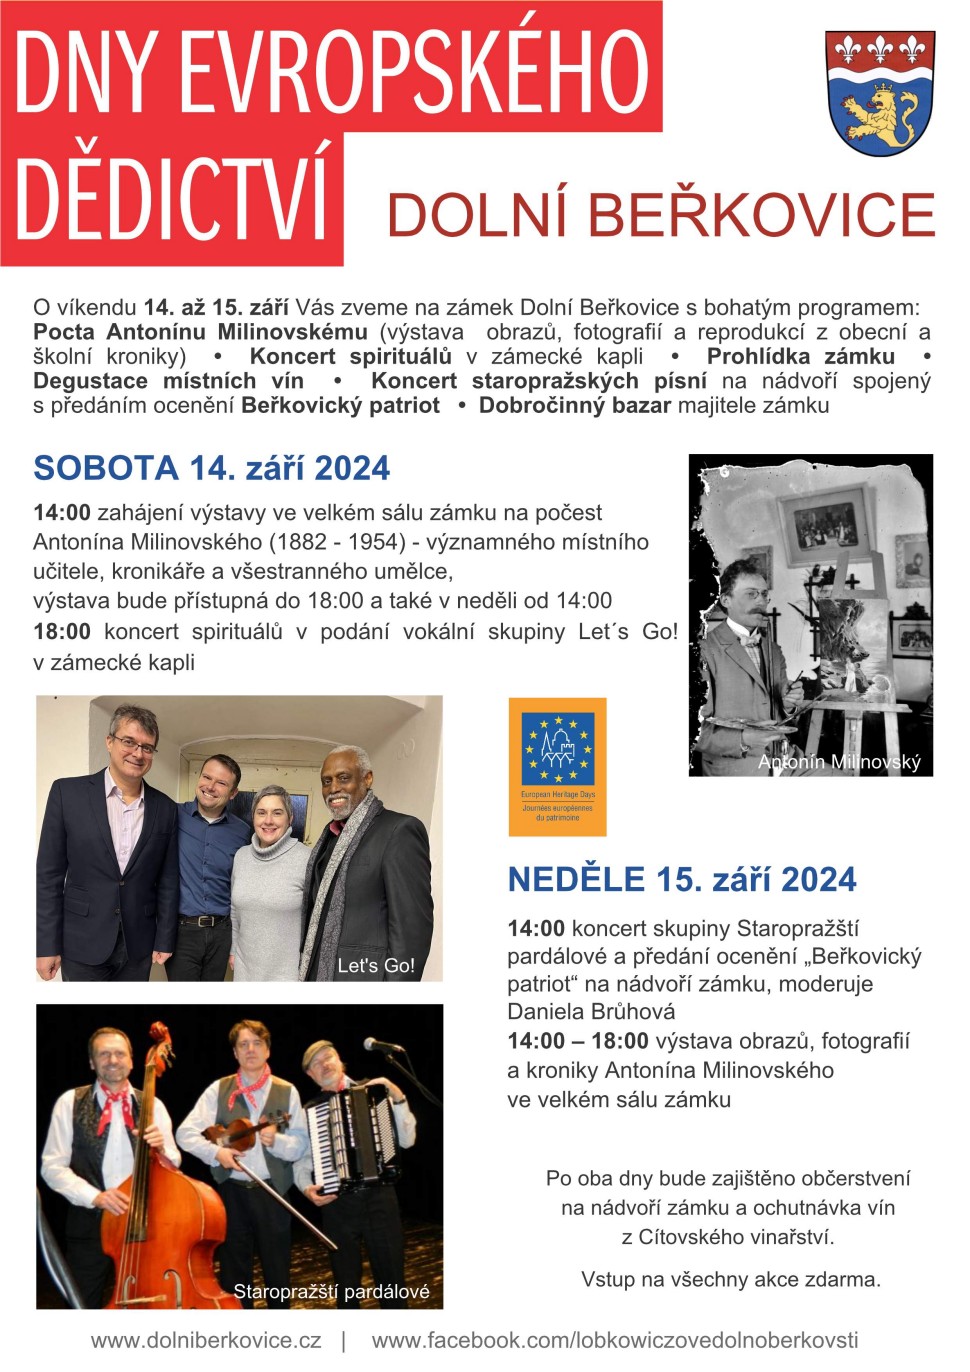 Dny evropského dědictví 2024 v Dolních Beřkovicích